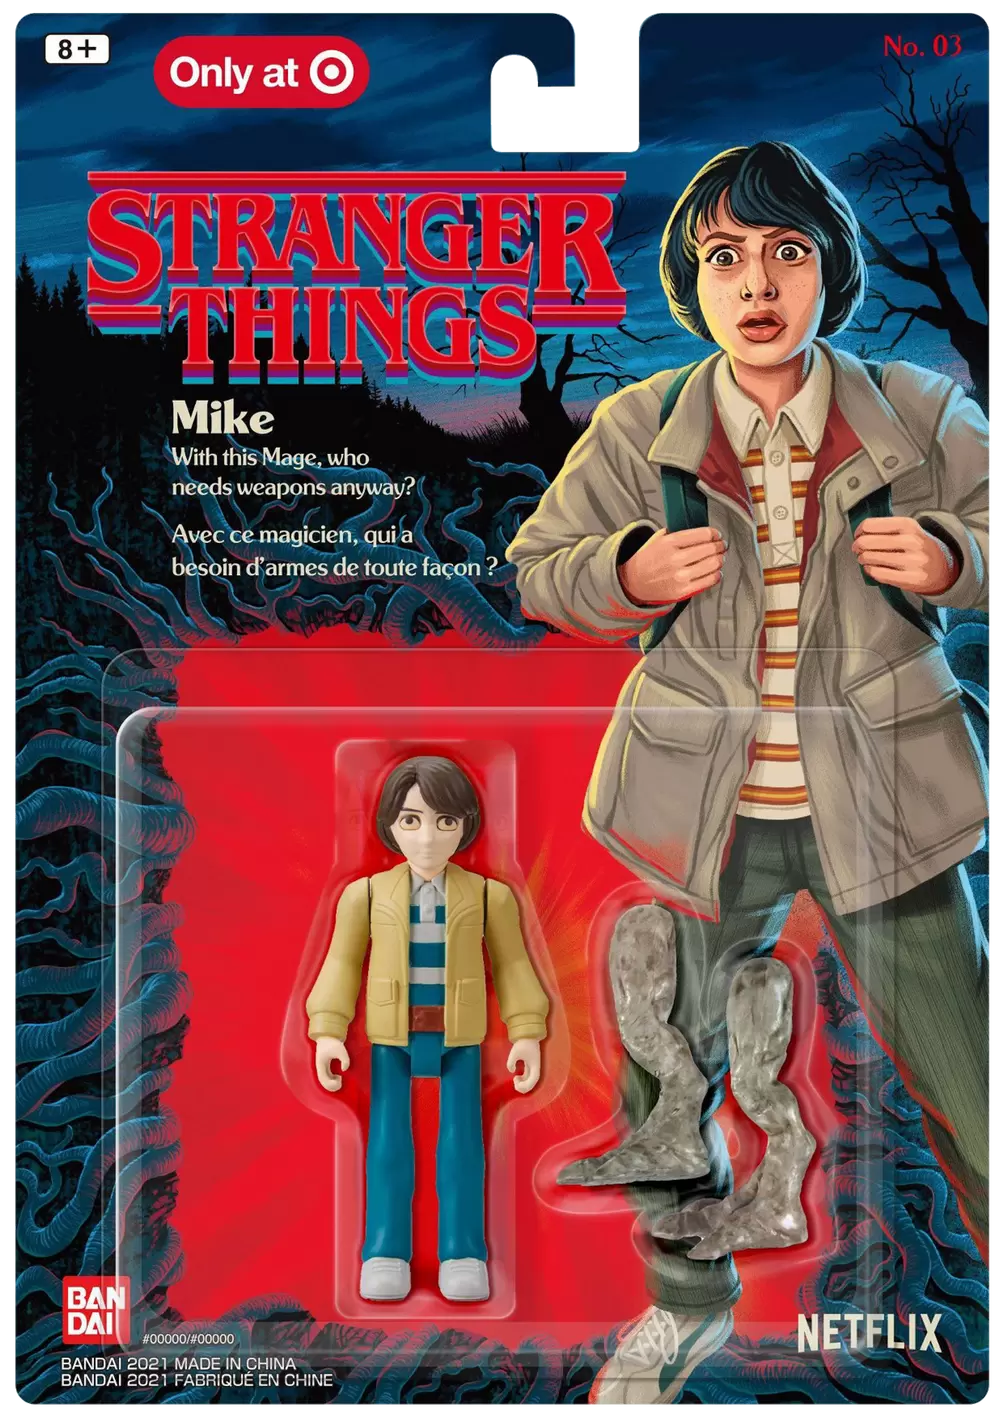 Stranger Things - Bandai - Mike